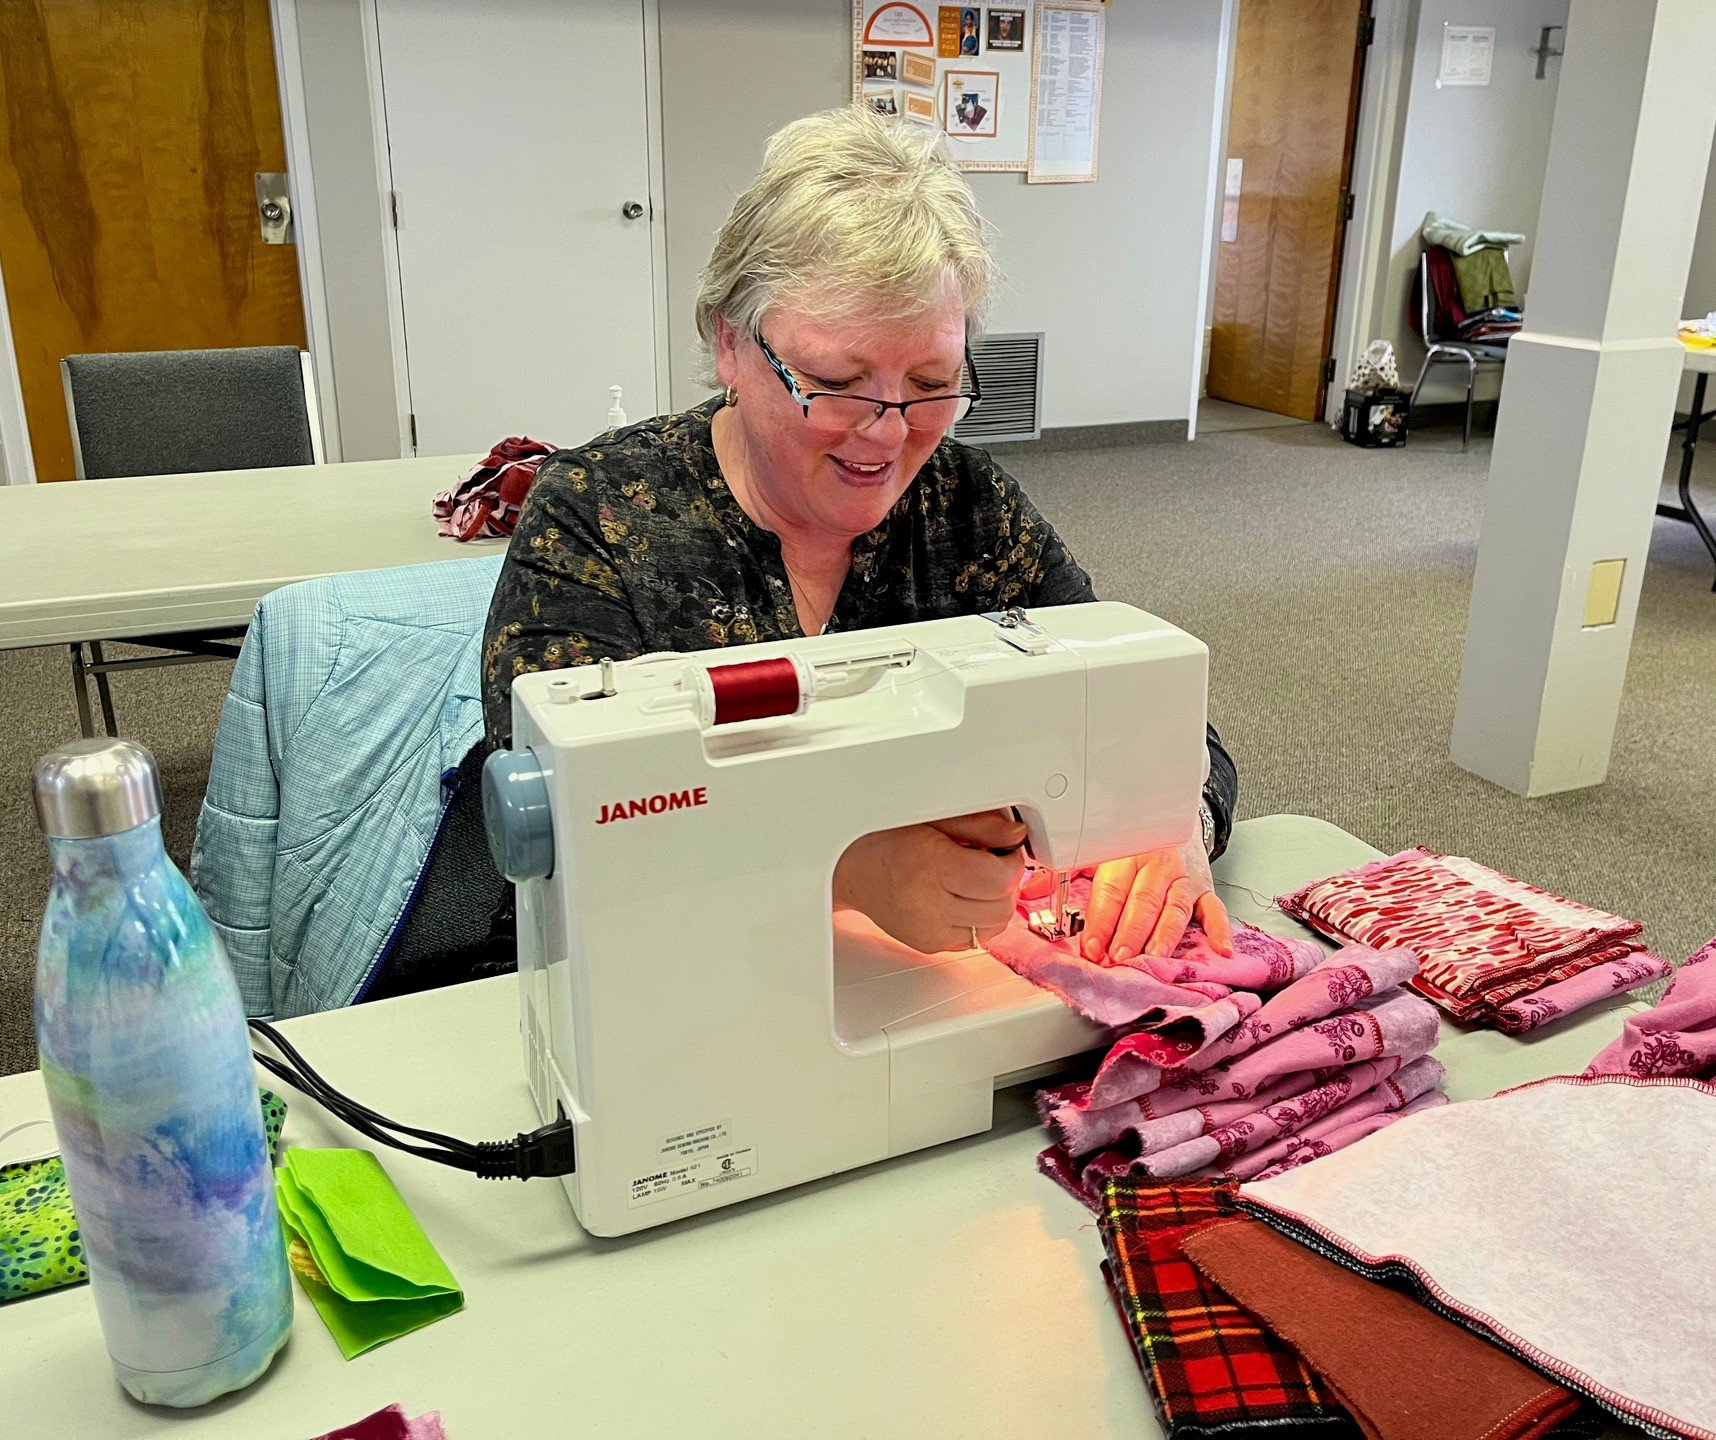 1 woman sewing.jpg